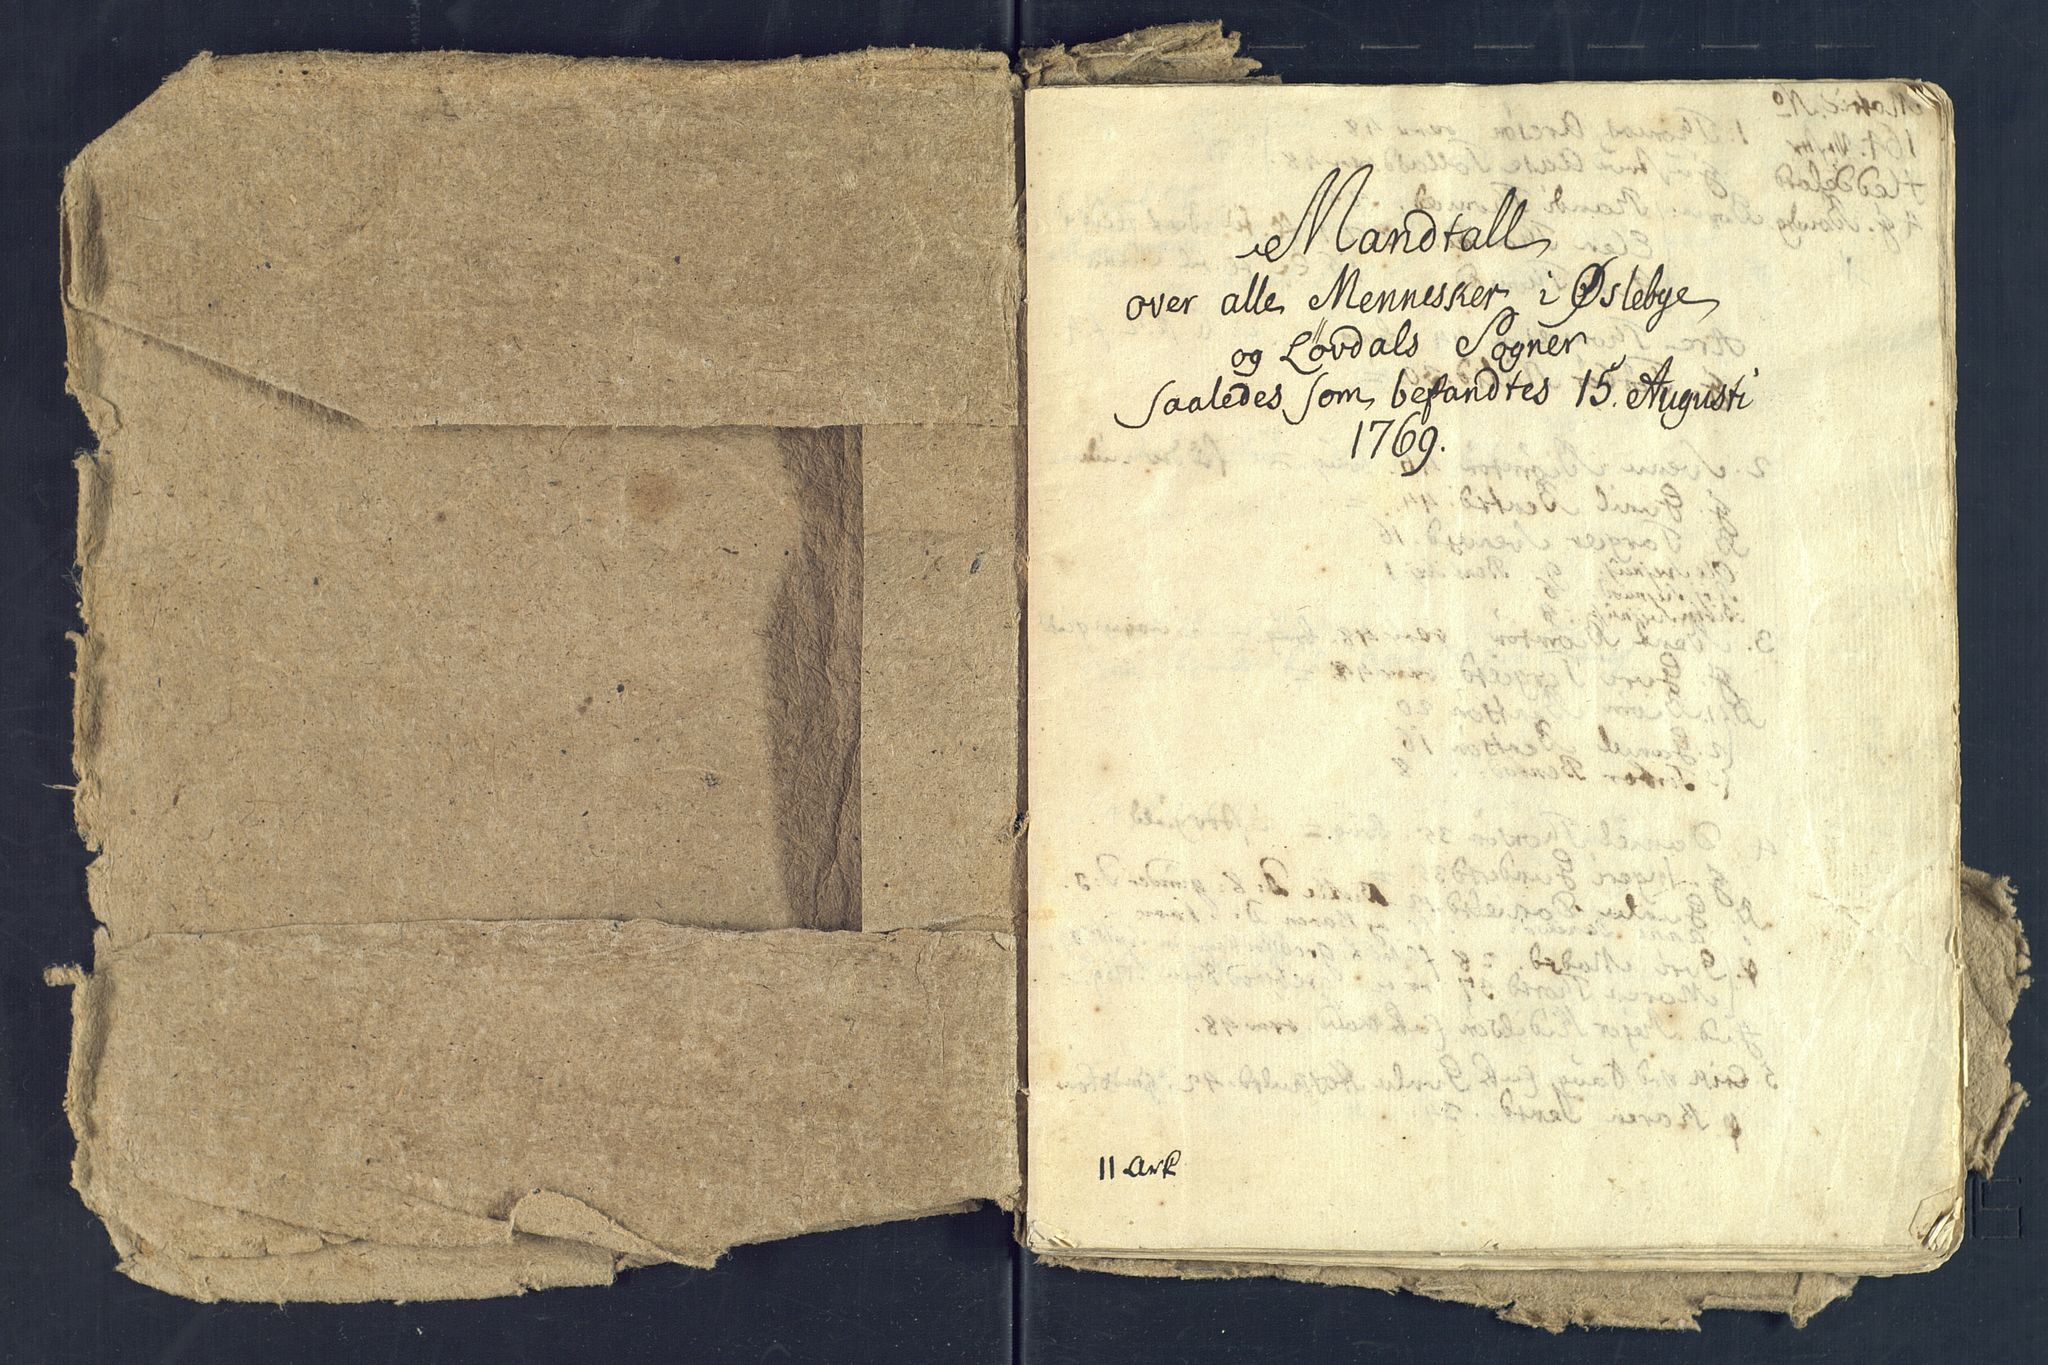 SAK, Holum sokneprestkontor, Andre øvrighetsfunksjoner, no. 7: Census for Øyslebø and Laudal local parishes 1769, 1769-1771, p. 2